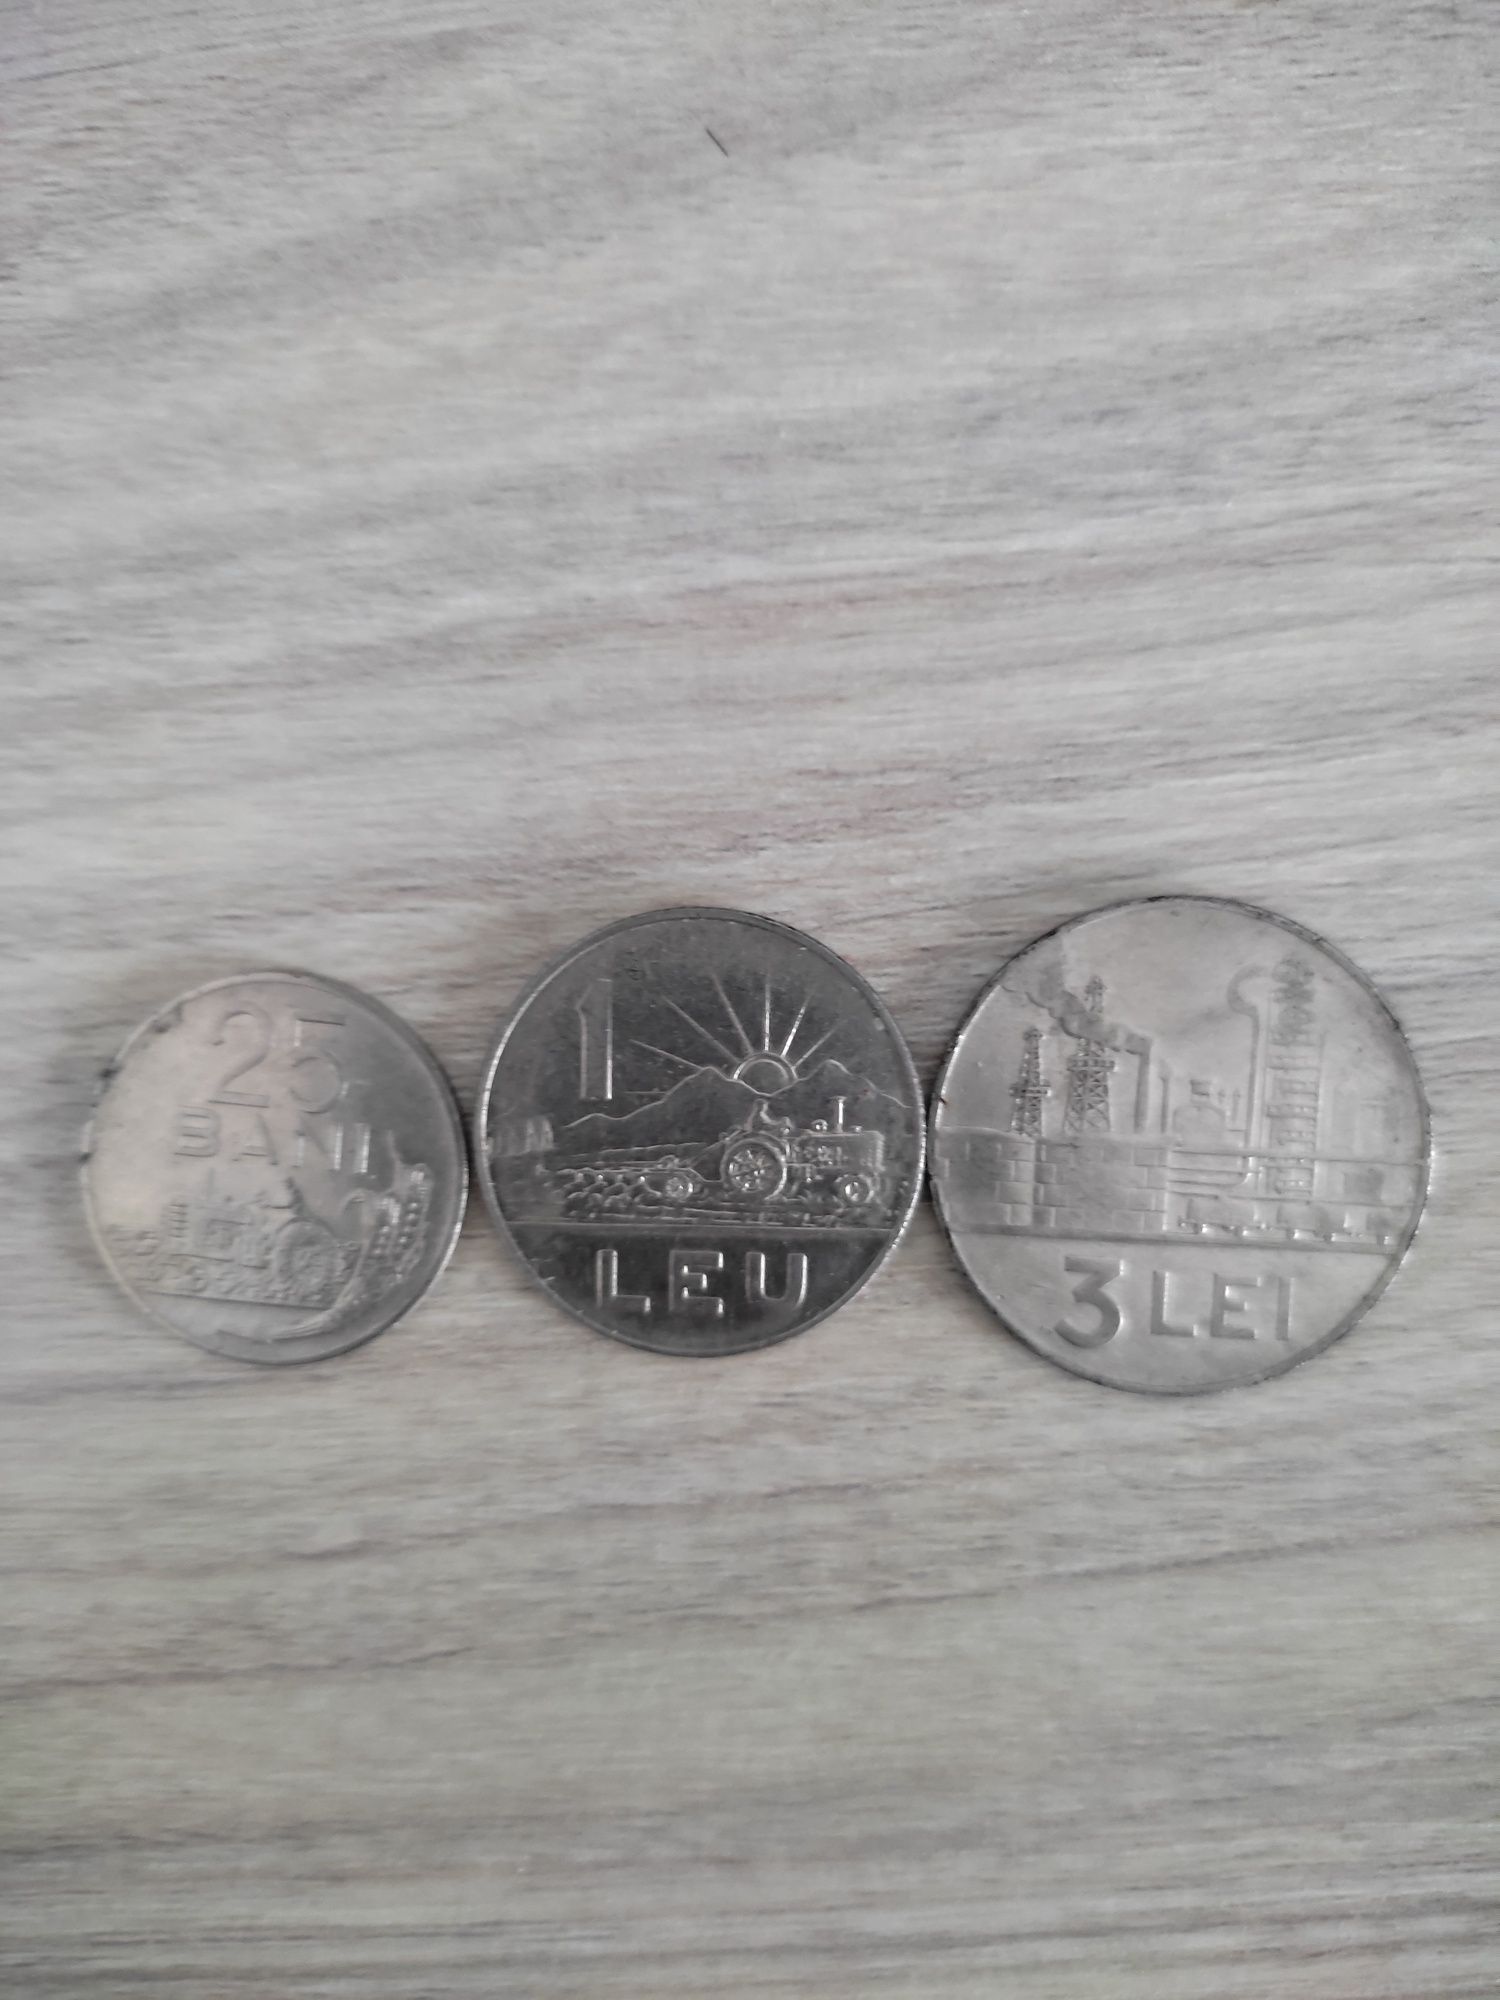 Vând Monede vechi